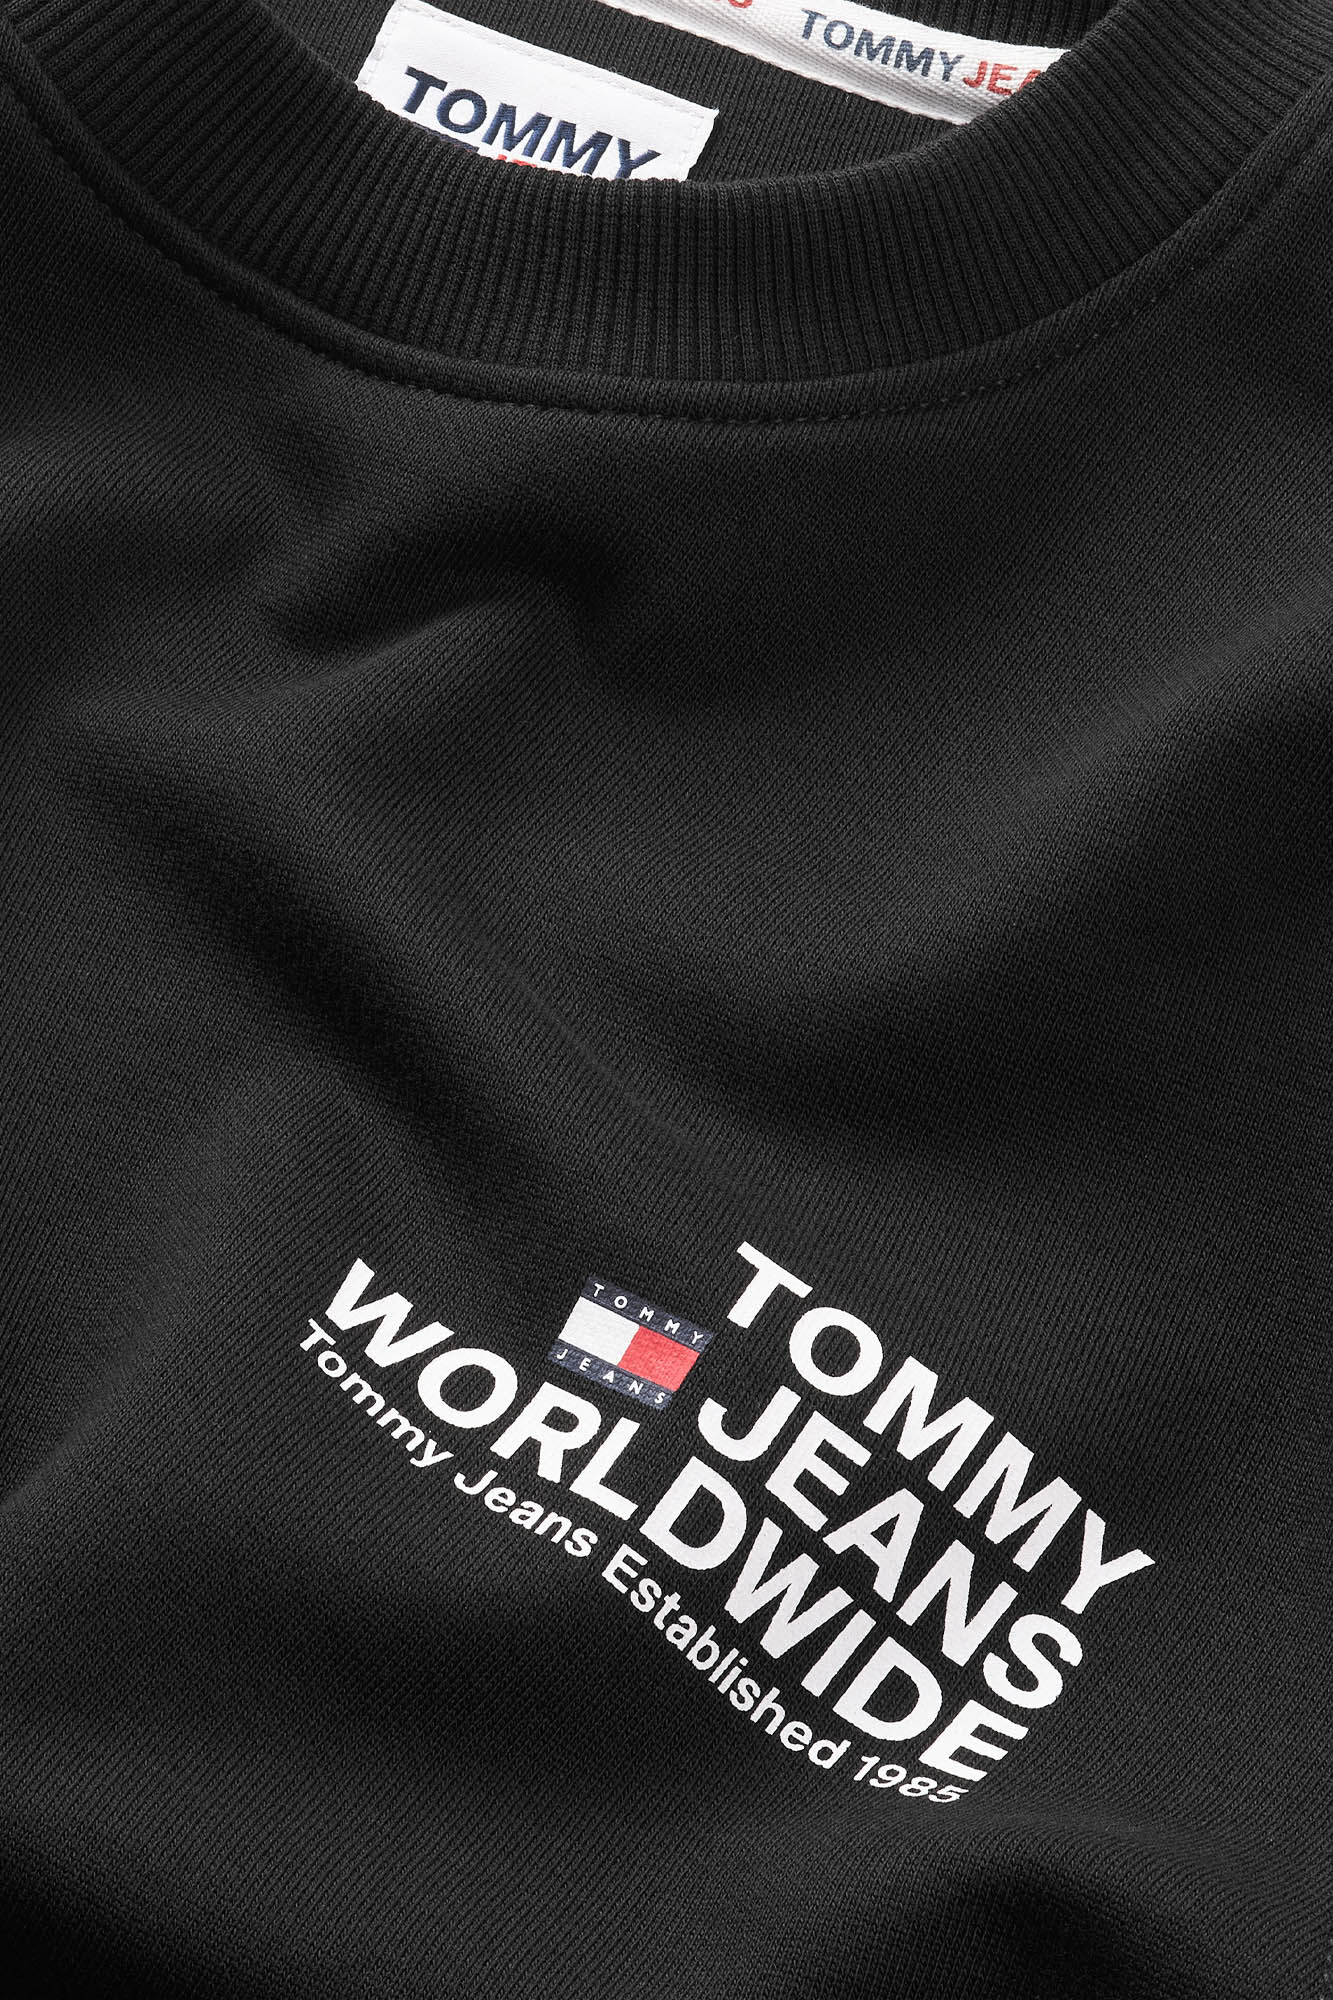 Tommy Jeans men's sweatshirt.